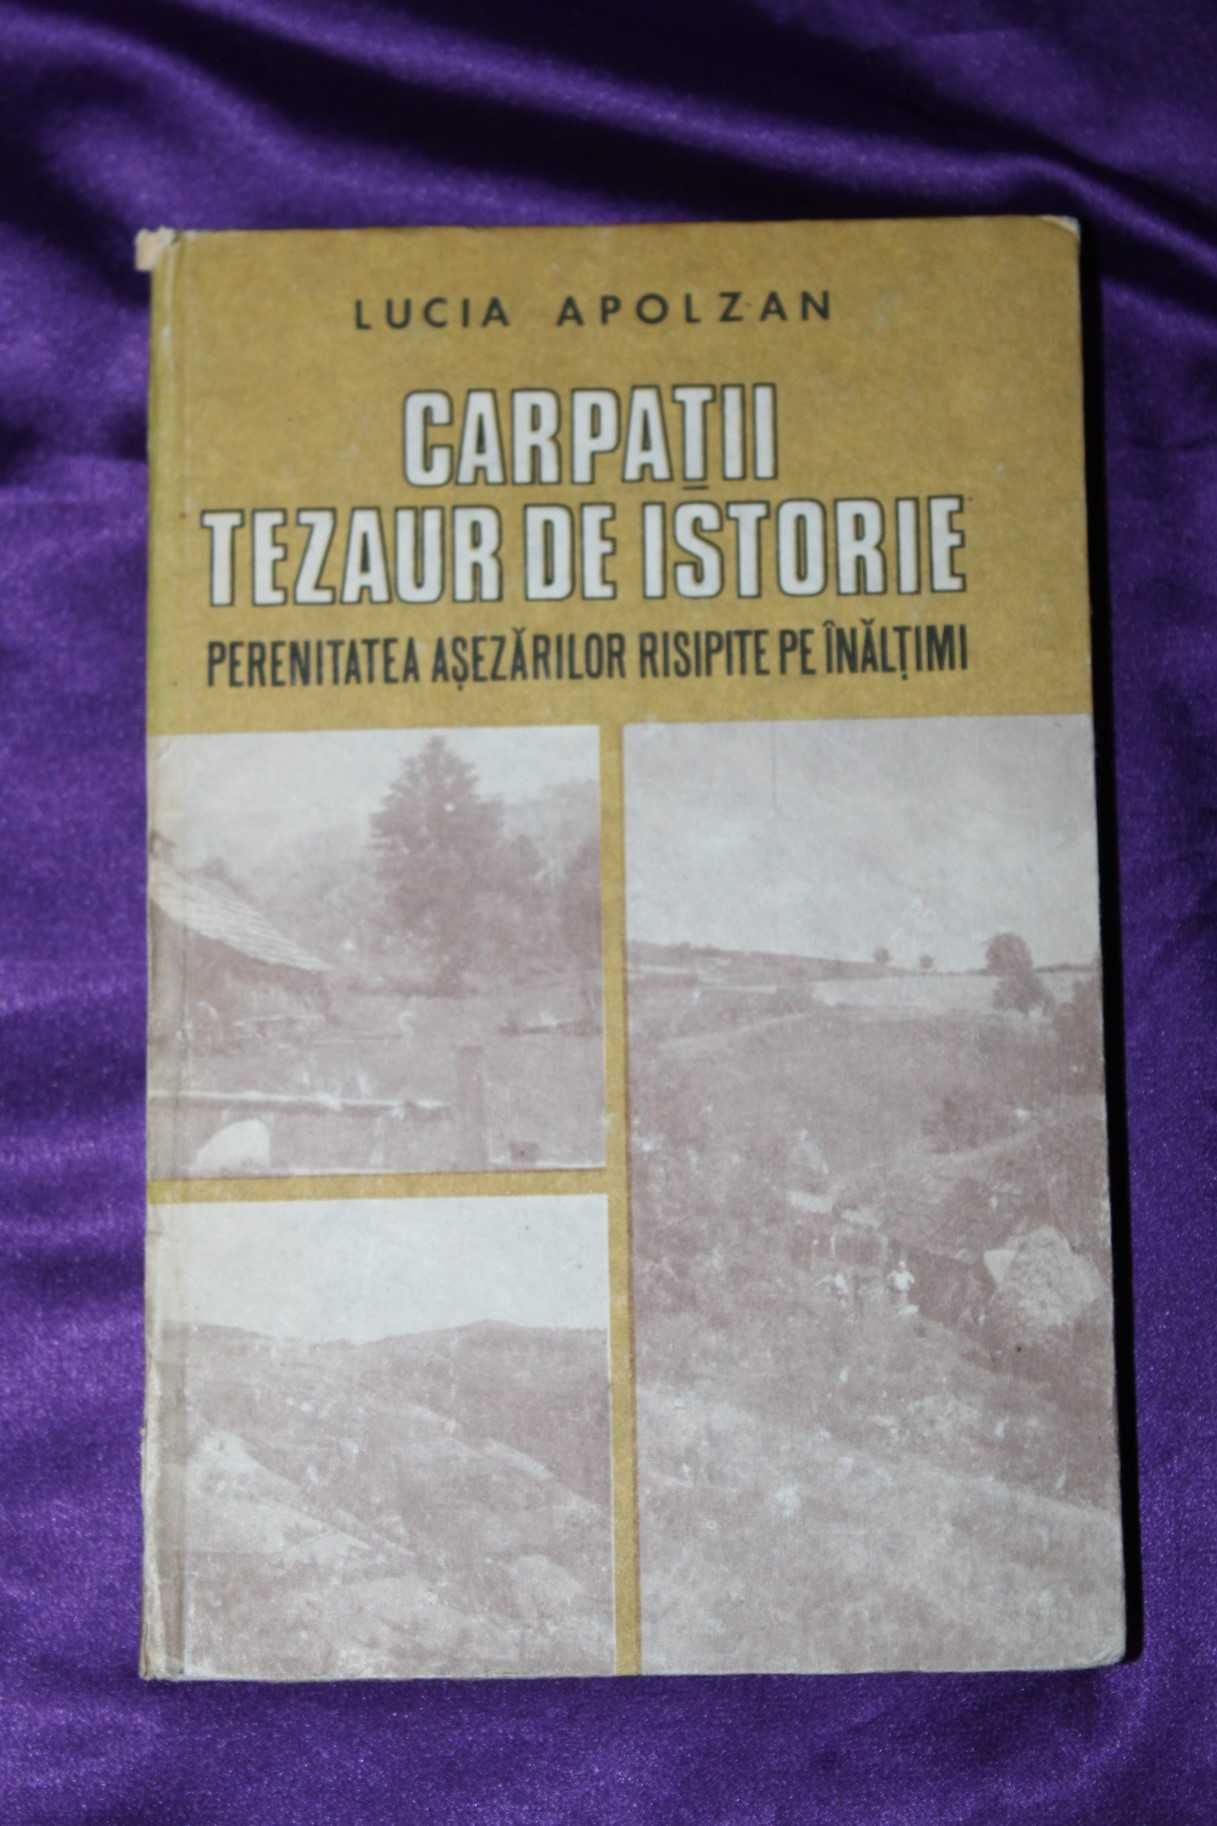 Lucia Apolzan  Carpatii tezaur de istorie etnografie hunedoara apuseni